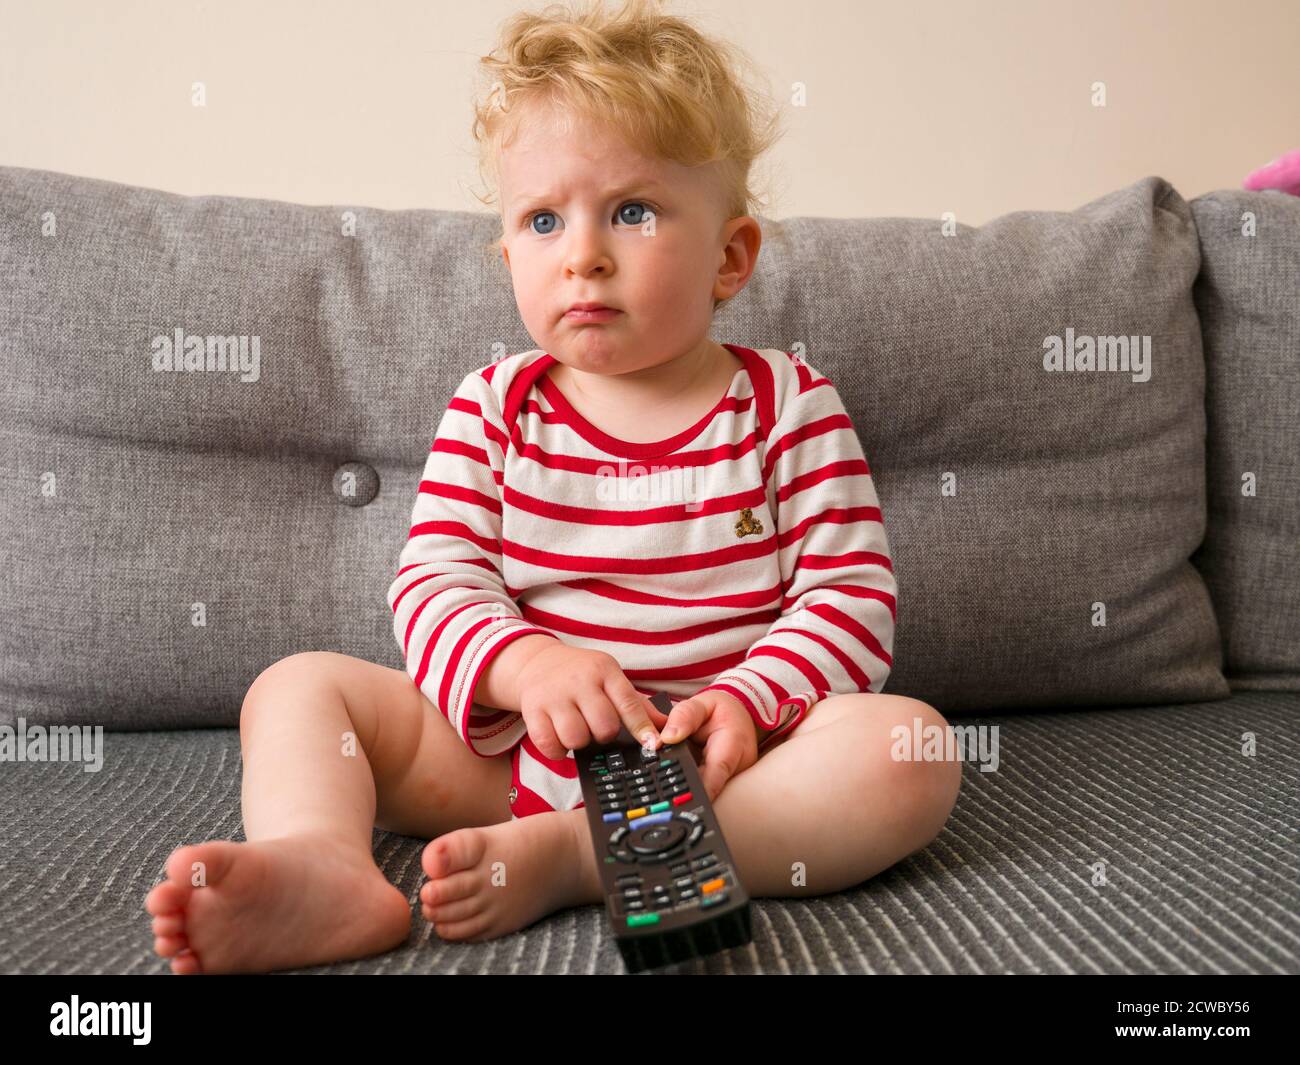 bébé d'un an utilisant la télécommande pour regarder la télévision Banque D'Images